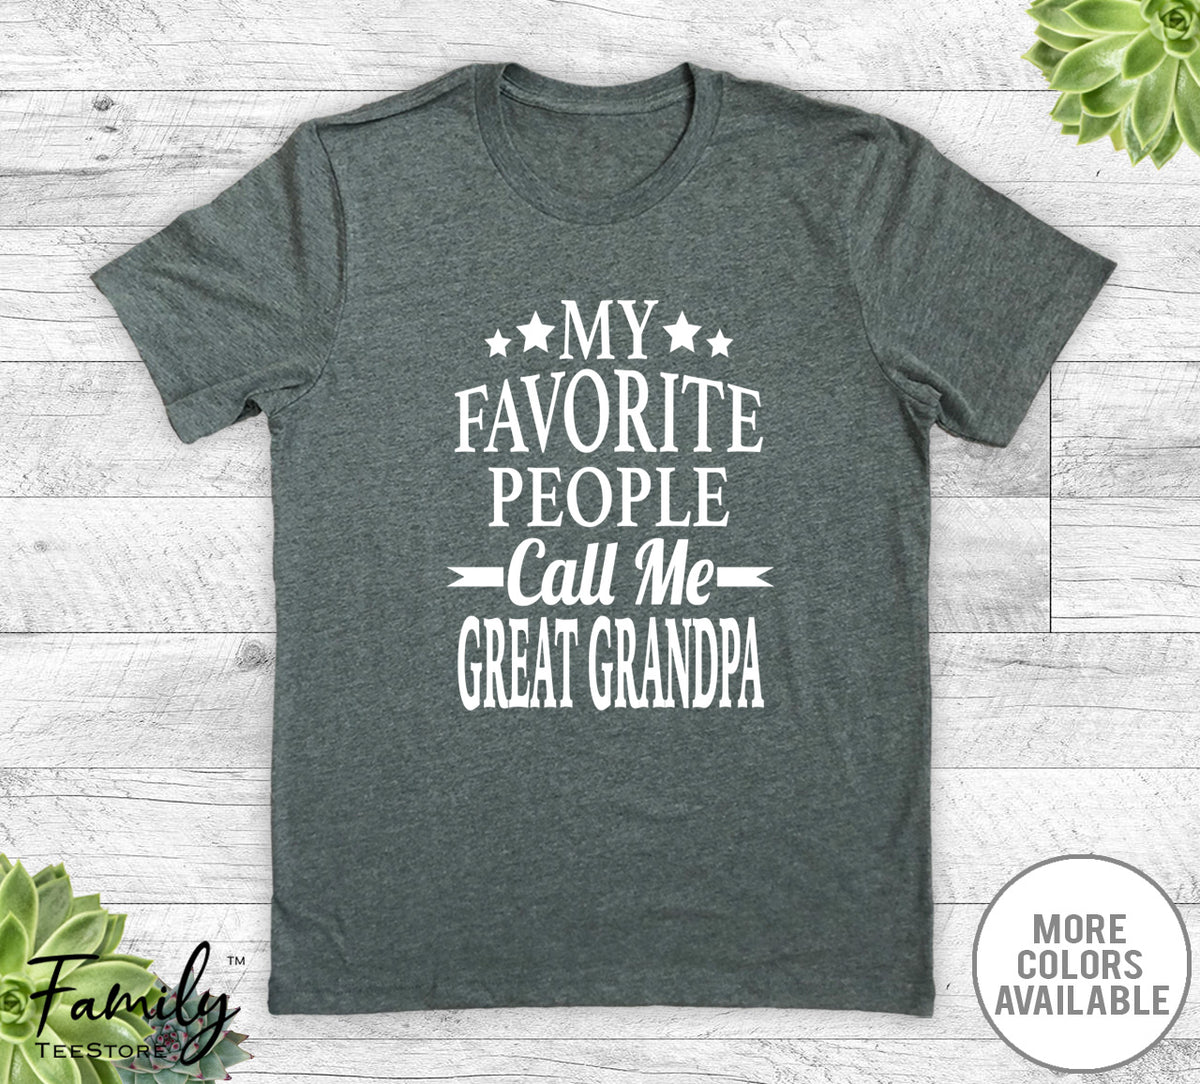 My Favorite People Call Me Great Grandpa - Unisex T-shirt - Great Grandpa Shirt - Great Grandpa Gift